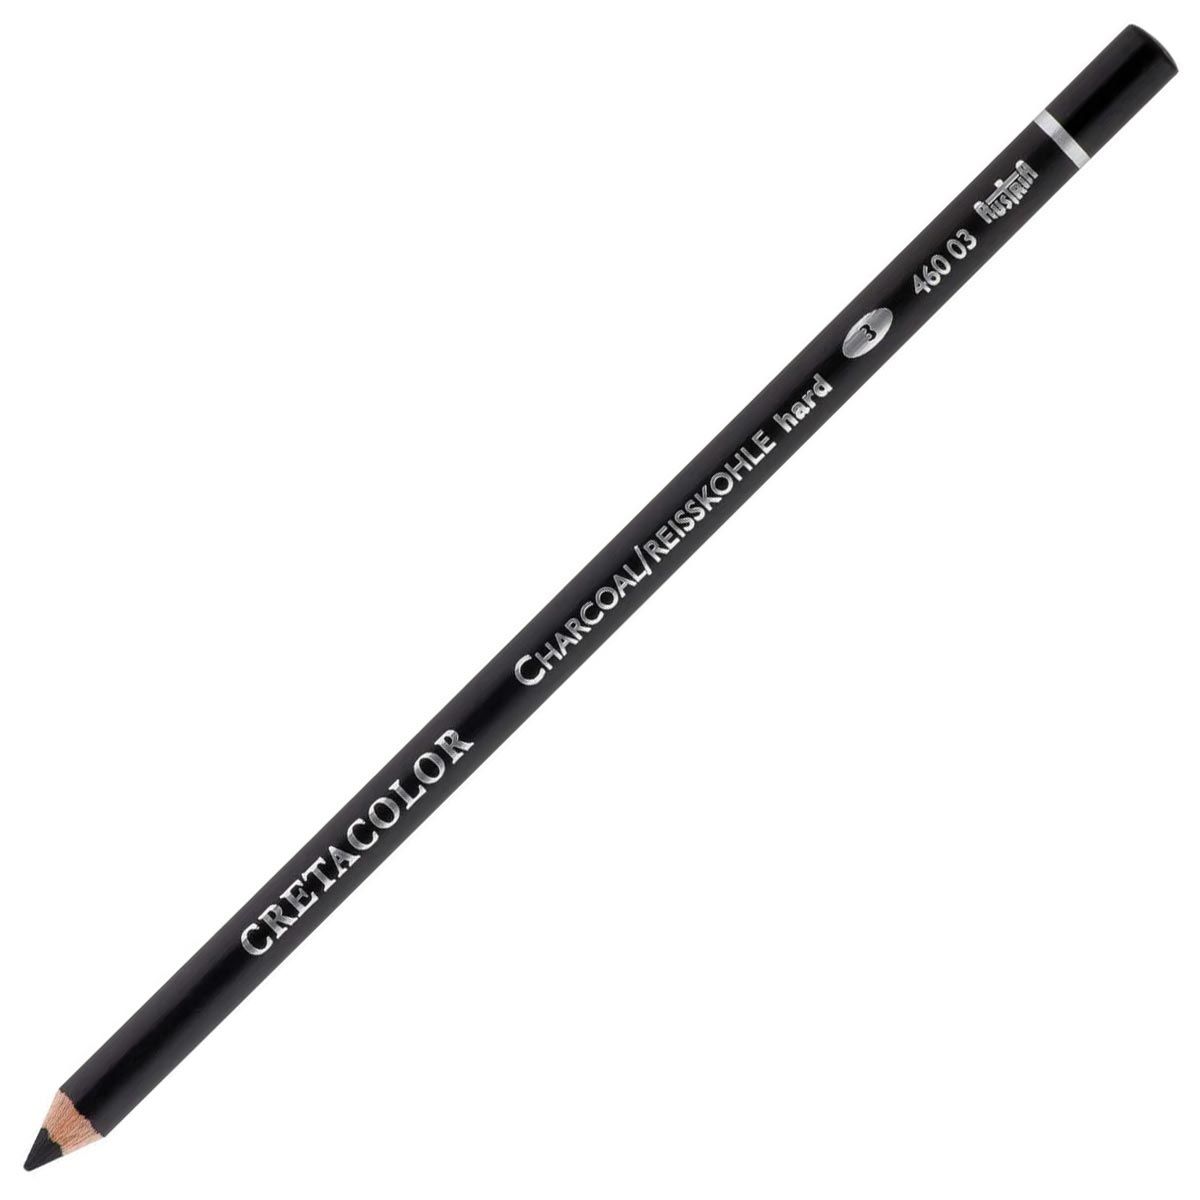 Cretacolor Charcoal Pencil - Hard